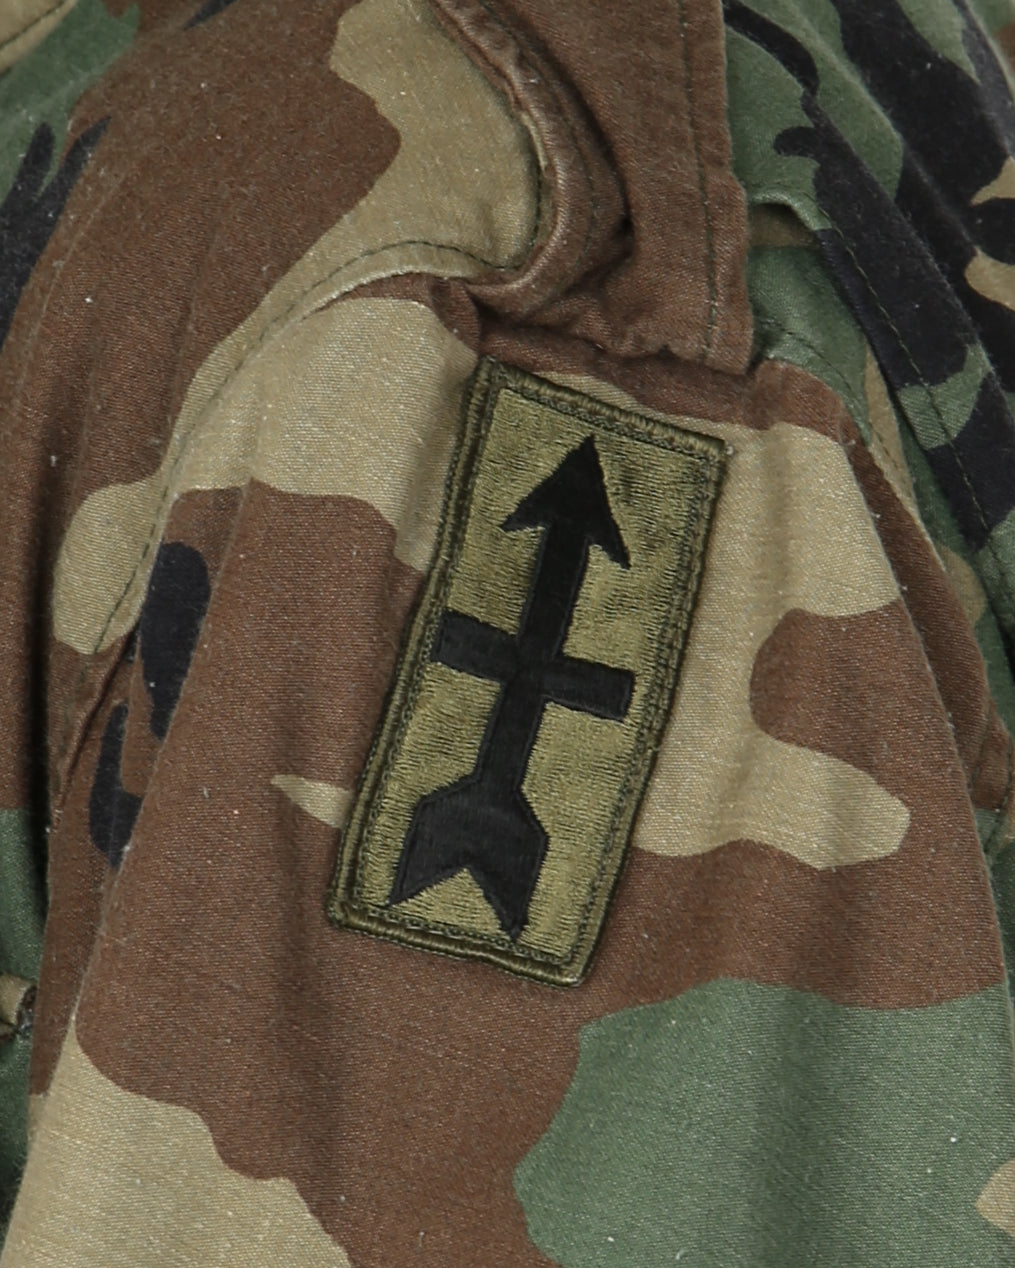 1991 Vintage US Army M81 Woodland Camouflage M65 Field Jacket - Medium / Regular